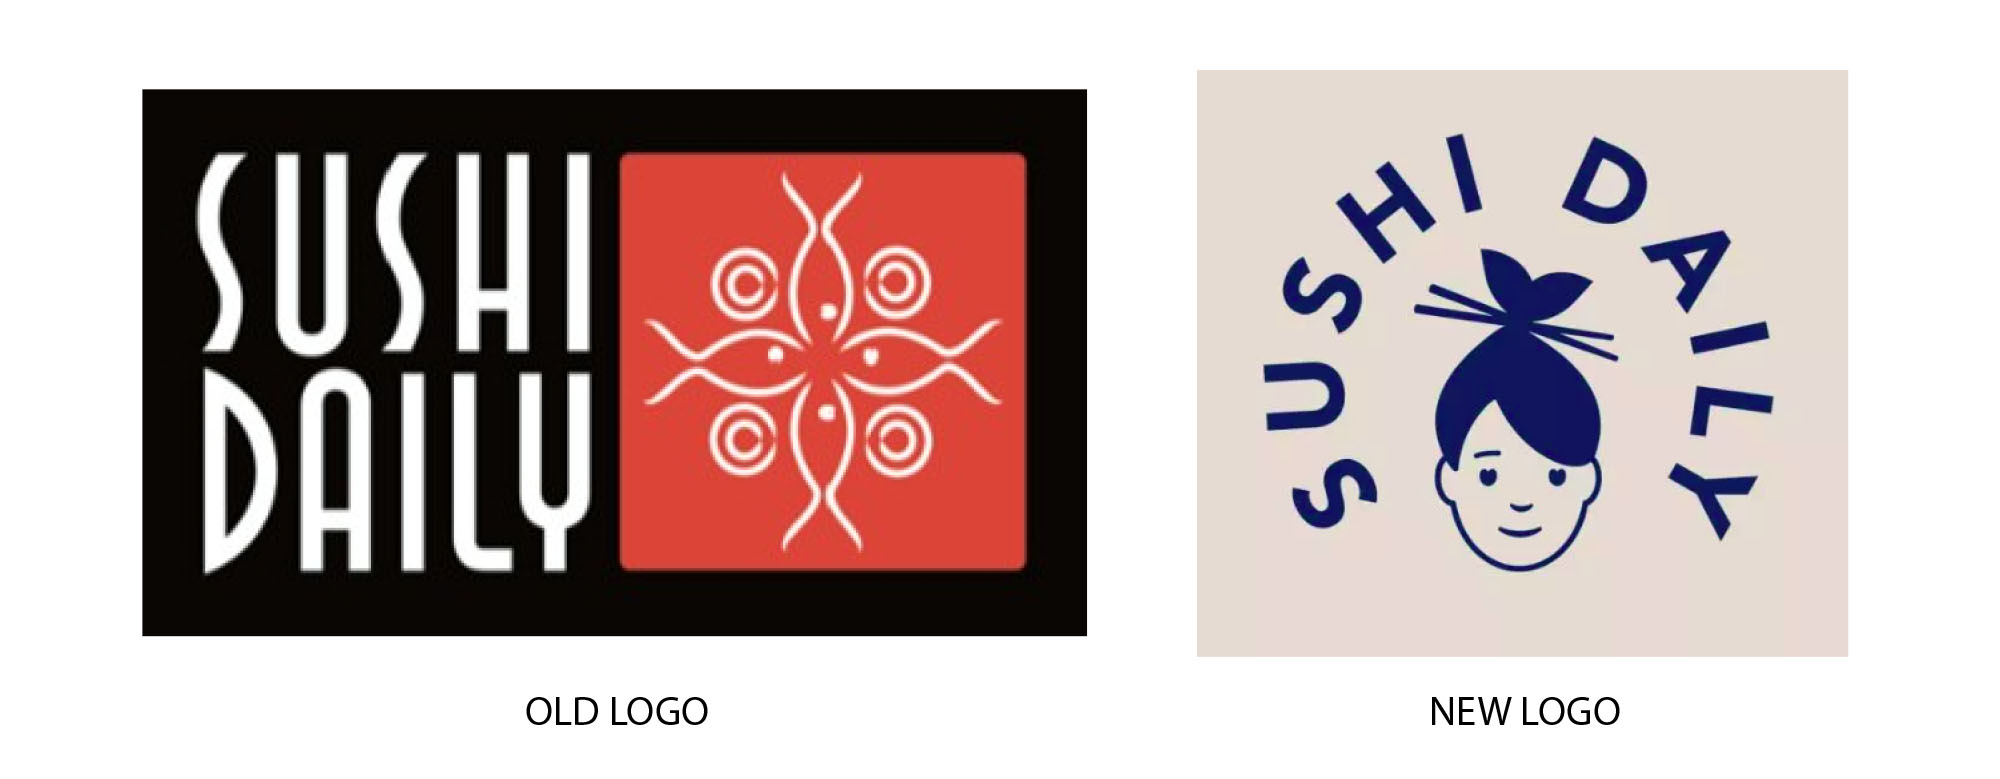 Adaptive logos 